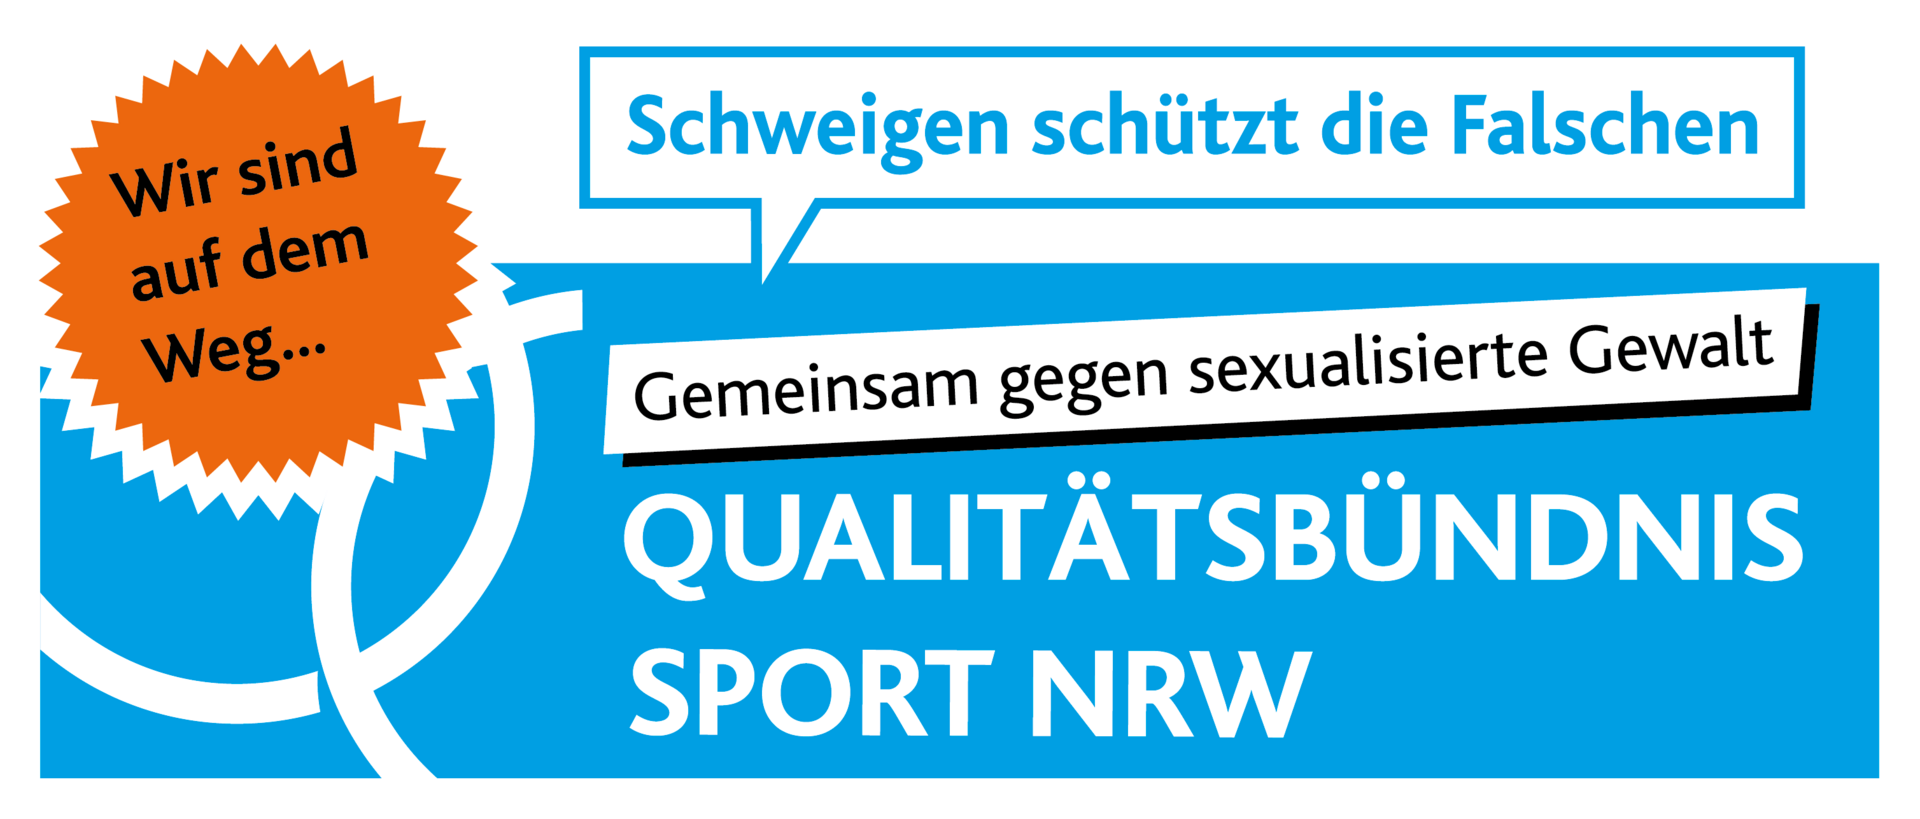 Qualitätsbüdnis Sport NRW